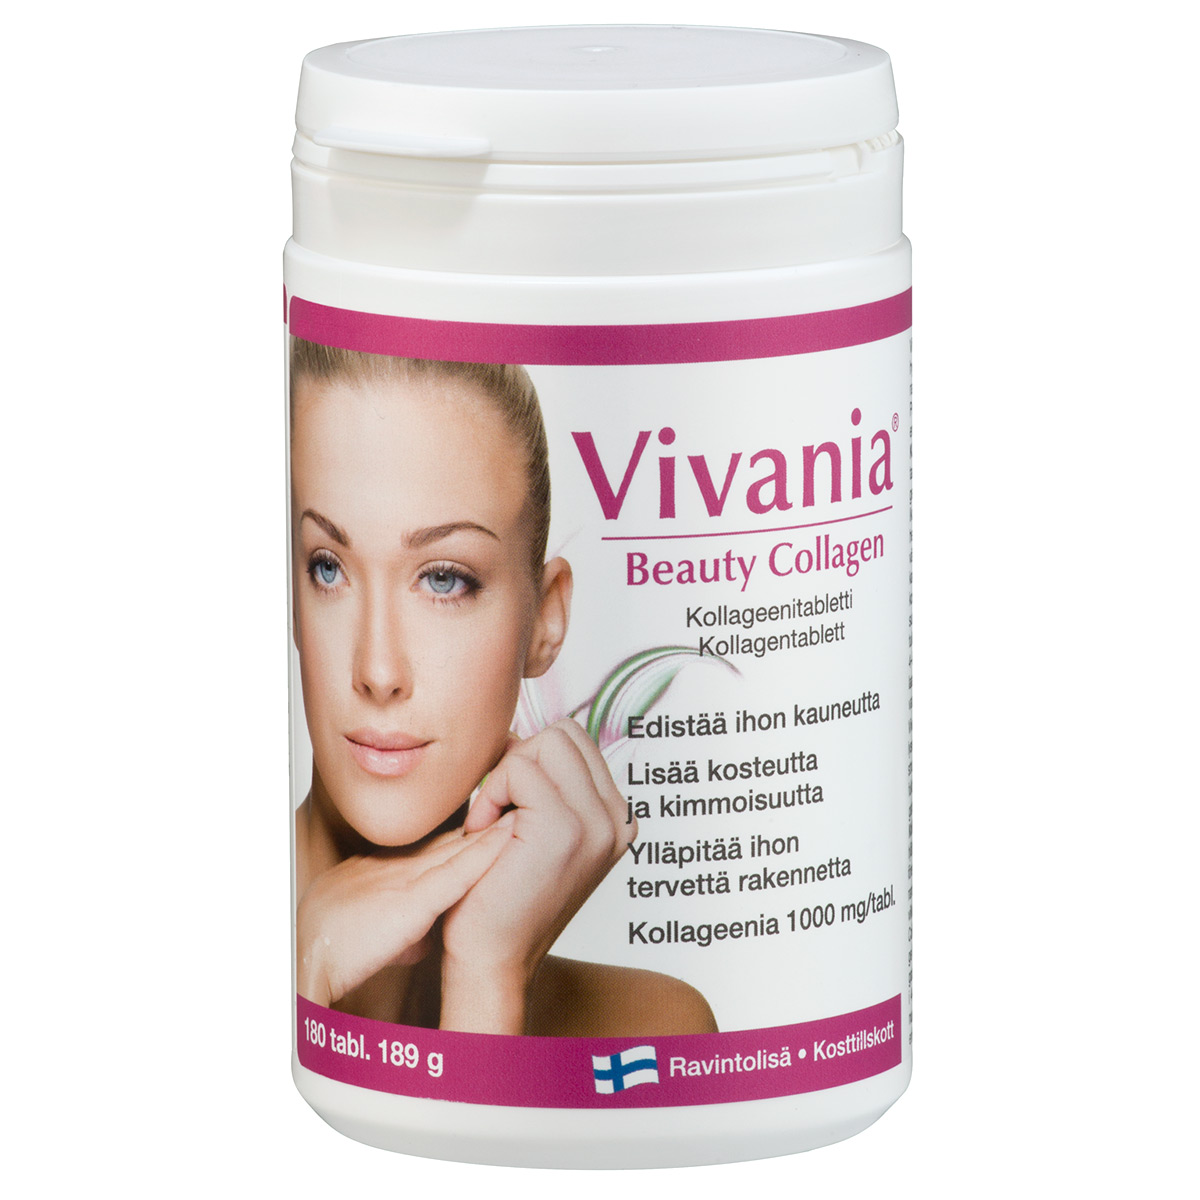 Витамины для кожи лица с коллагеном Vivania Beauti Collagen (ФИНЛЯНДИЯ, 180 таб.)